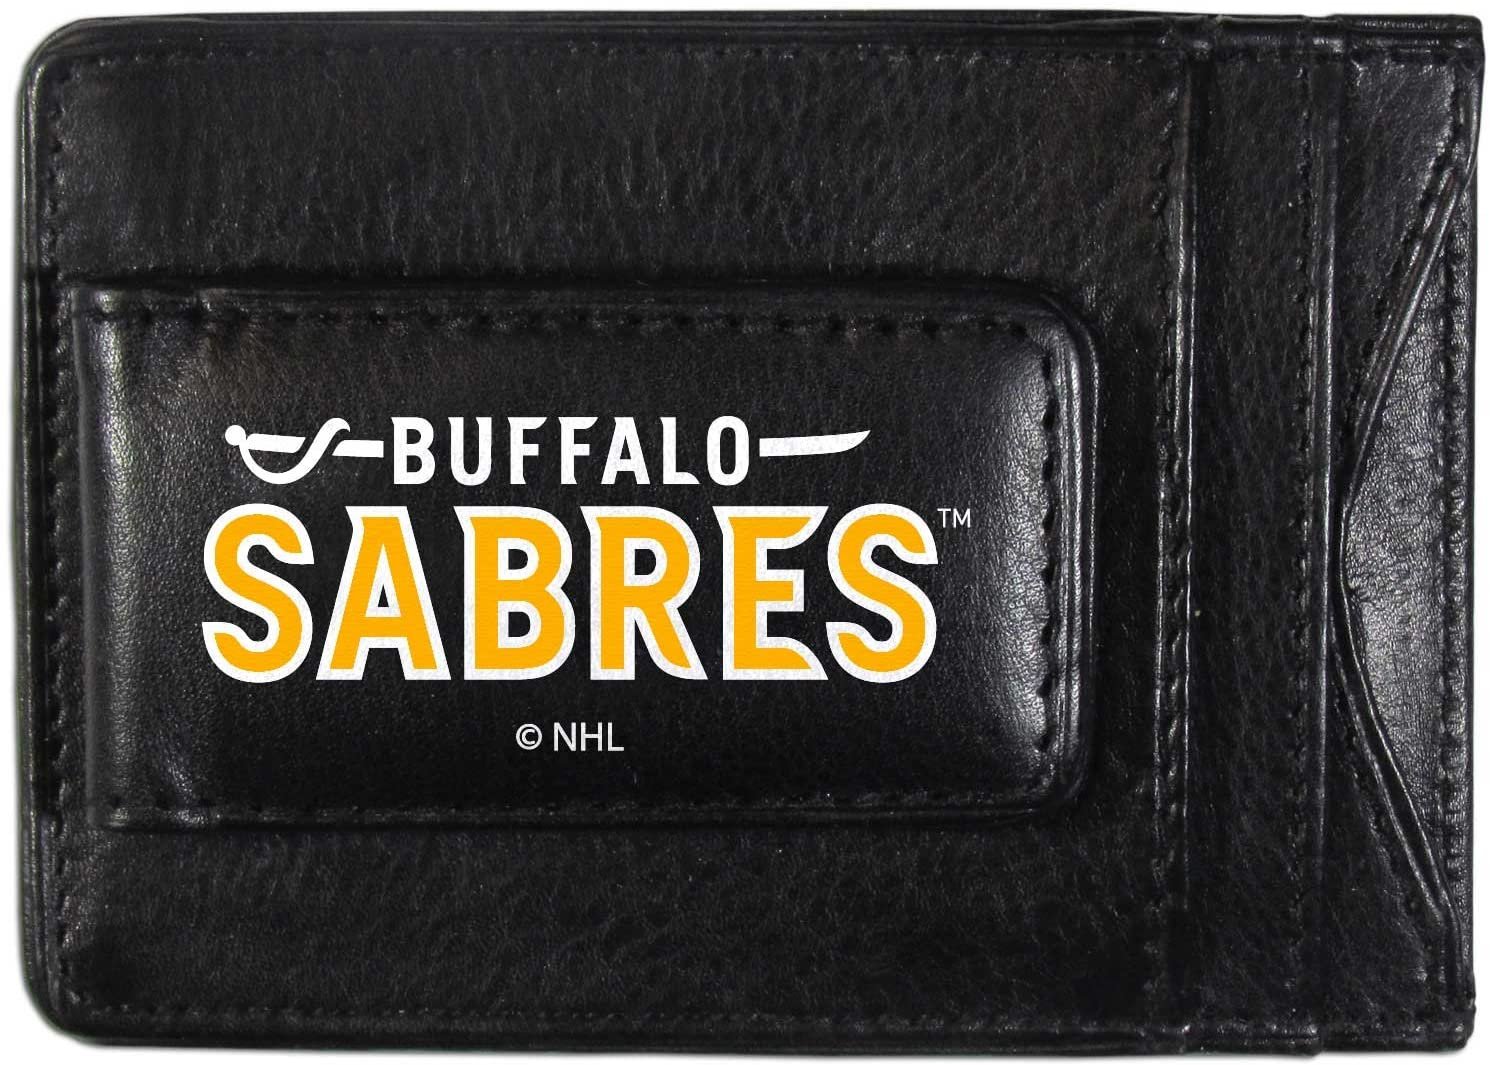 Buffalo Sabres Black Leather Wallet, Front Pocket Magnetic Money Clip, Printed Logo